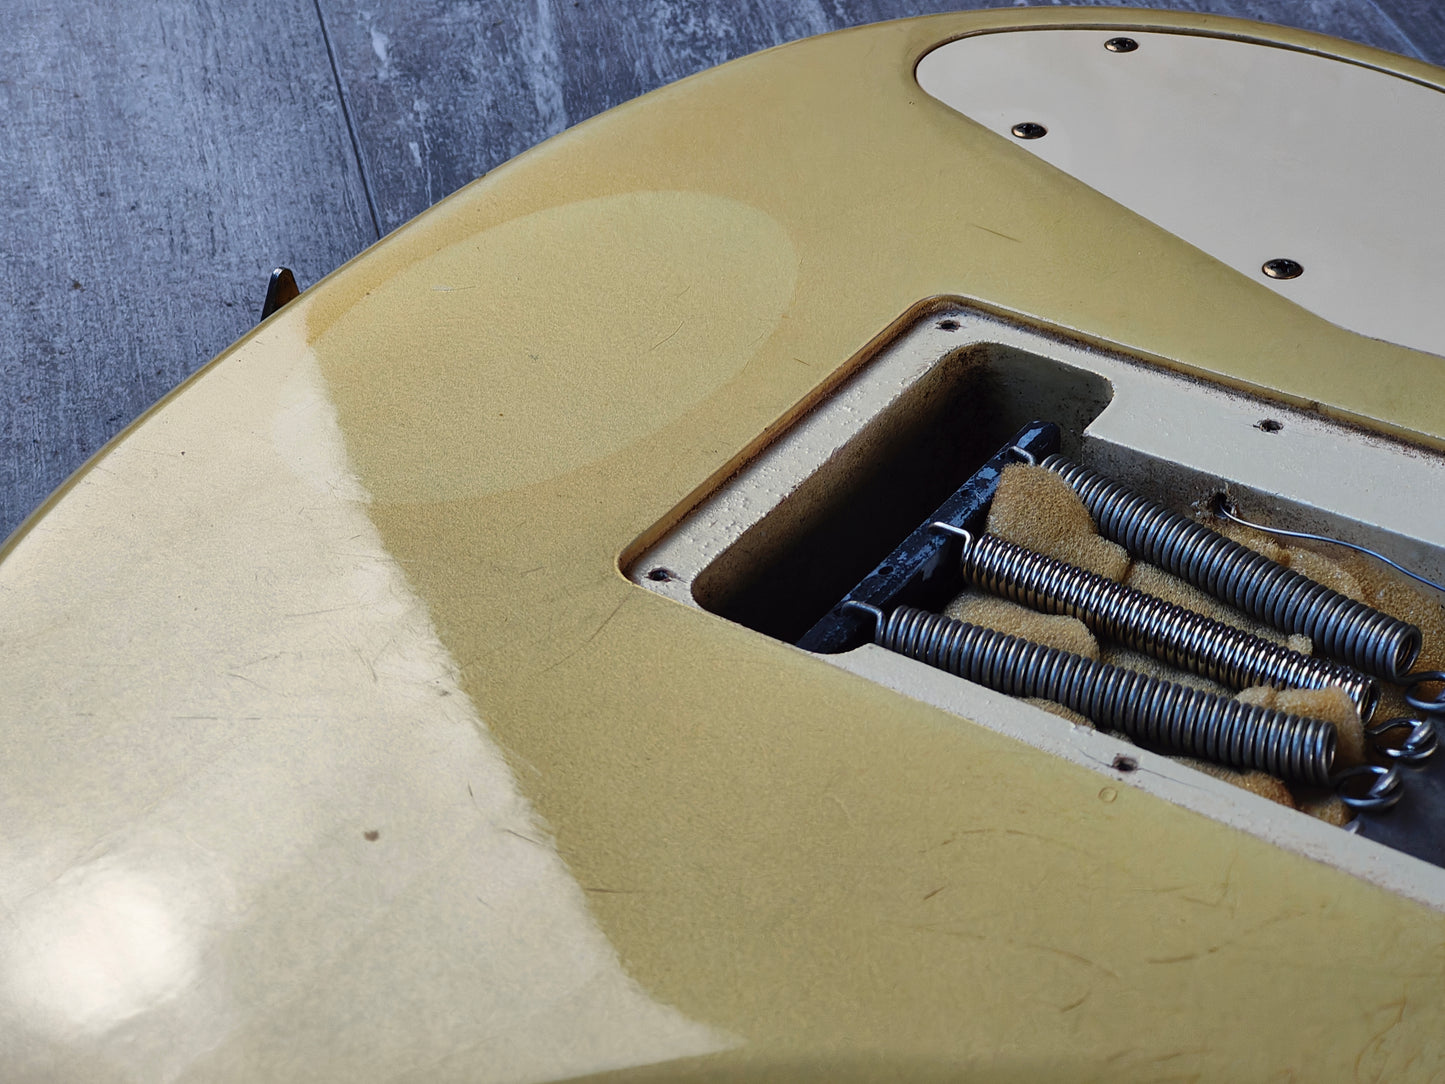 1983 Ibanez Japan RS450 Roadstar II Vintage Electric Guitar (Pearl White)